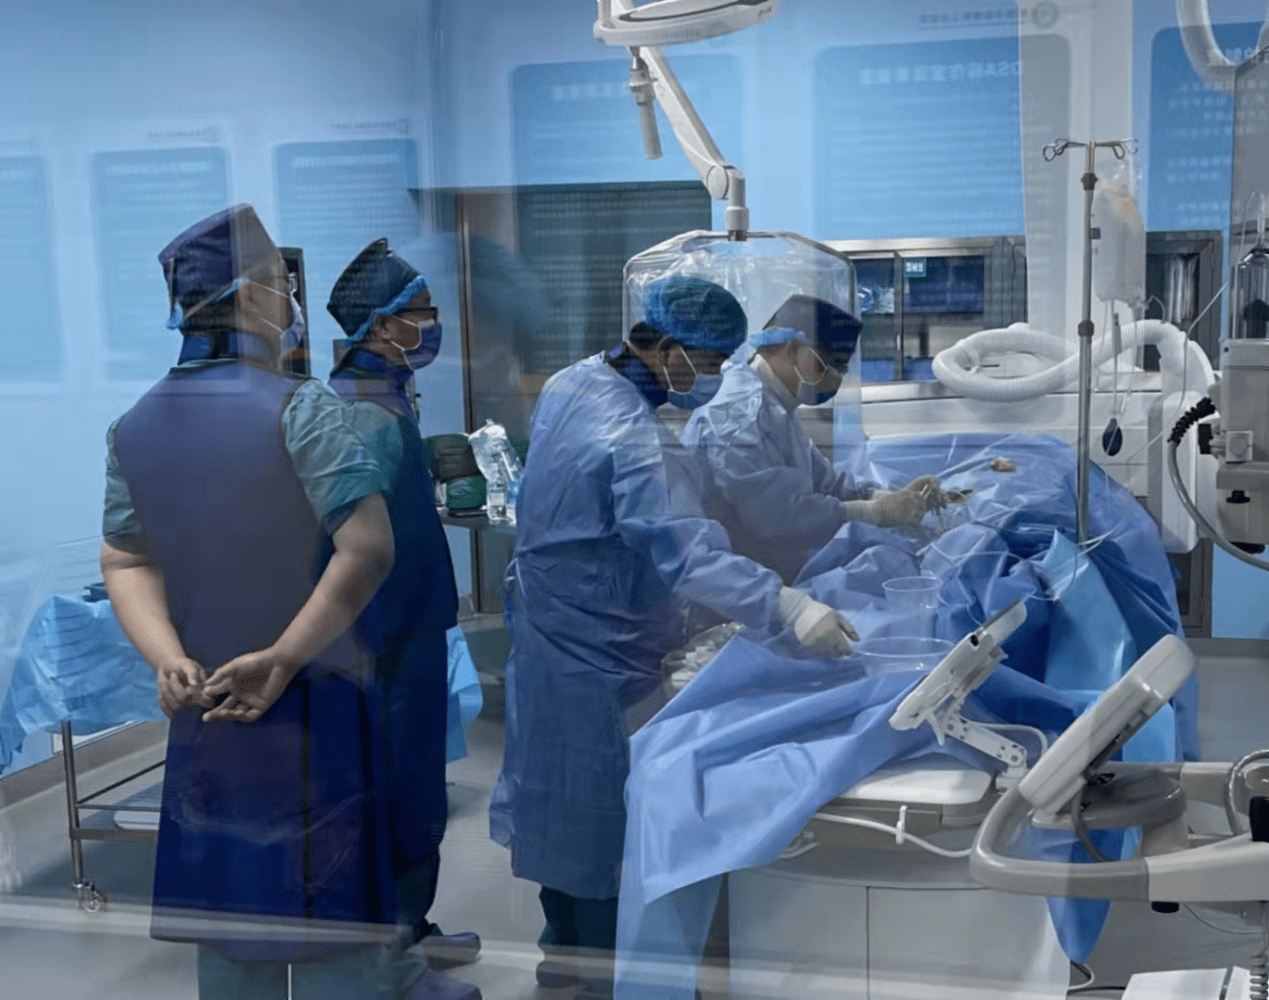 关于广安门中医院国医大师黄牛号贩子代挂；30台无创冠脉核磁设备将“走进”美年大健康的信息